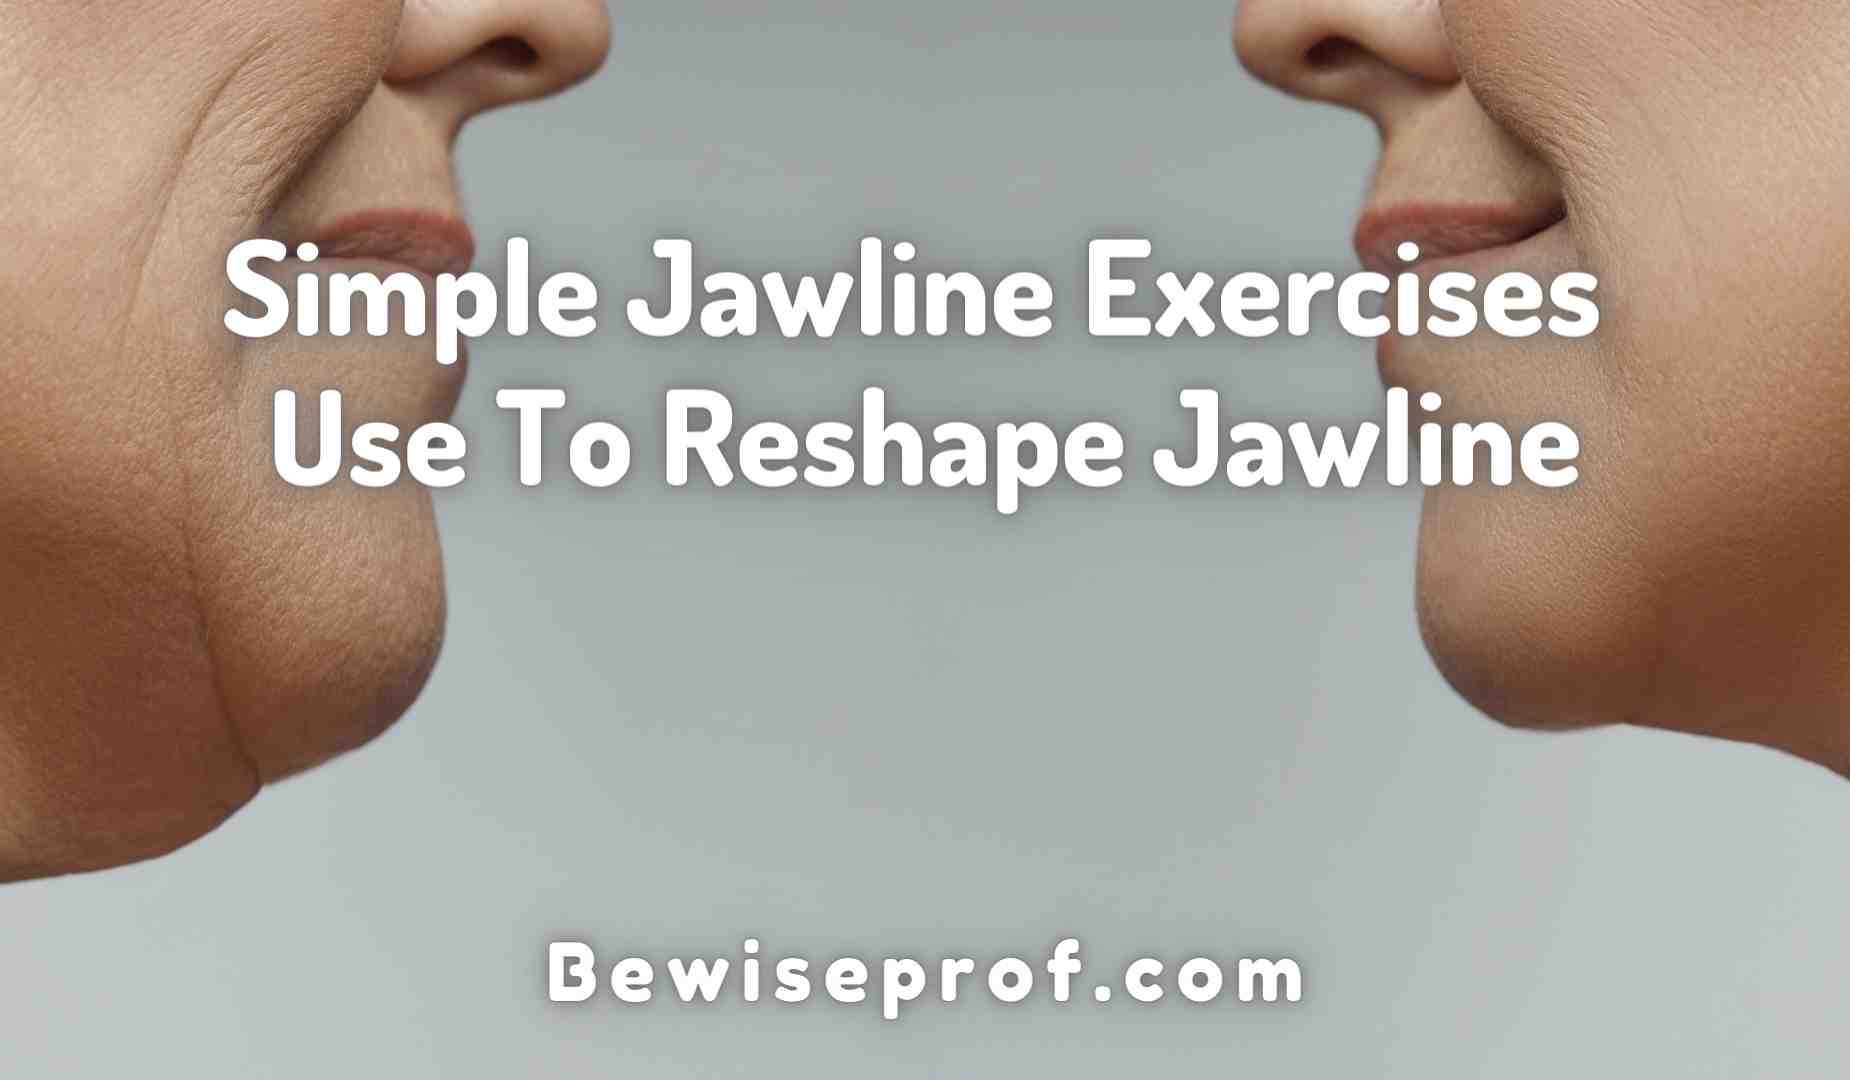 Simple Jawline Exercises Use To Reshape Jawline